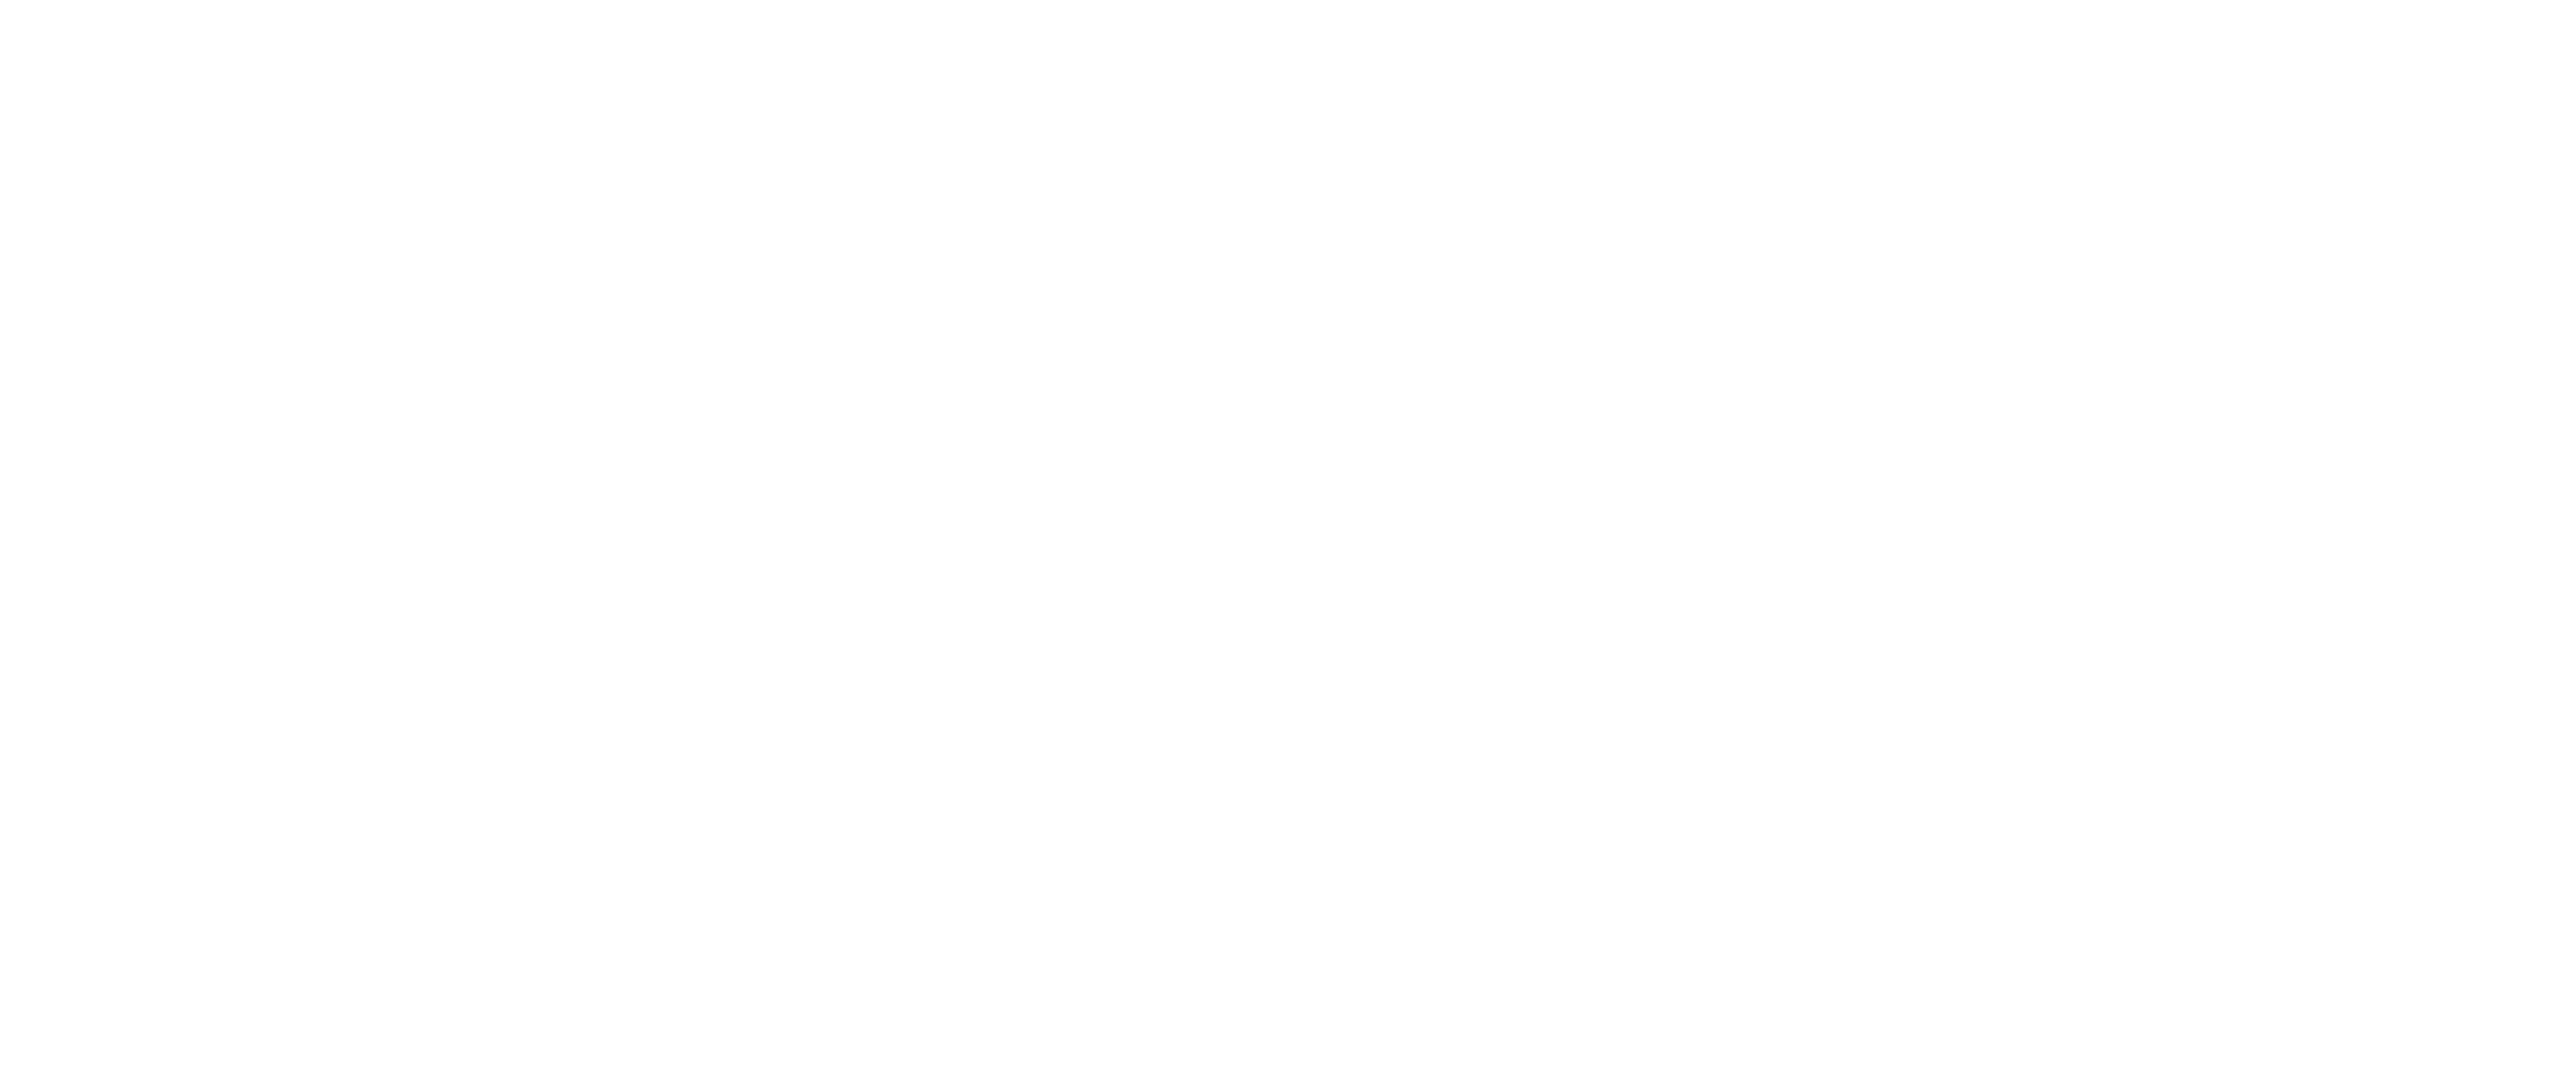 Elite Home Body Logo white